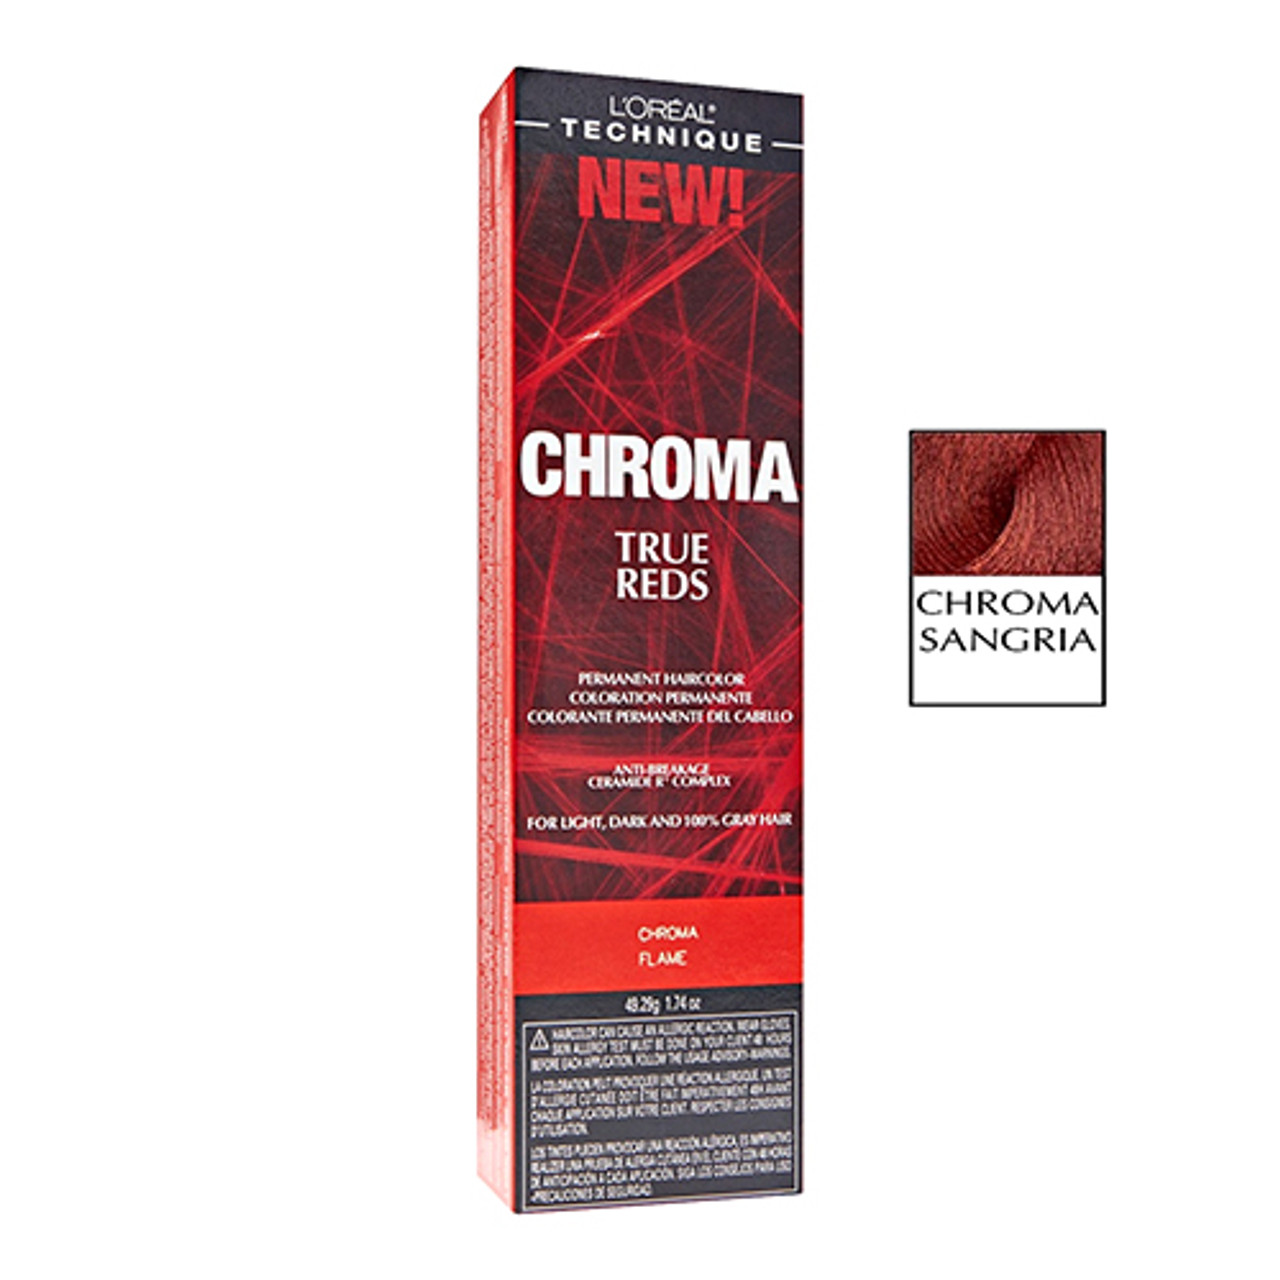 Loreal Technique Chroma True Reds permanent Hair Color For Light, Chroma  Sangria, 1.74 oz 